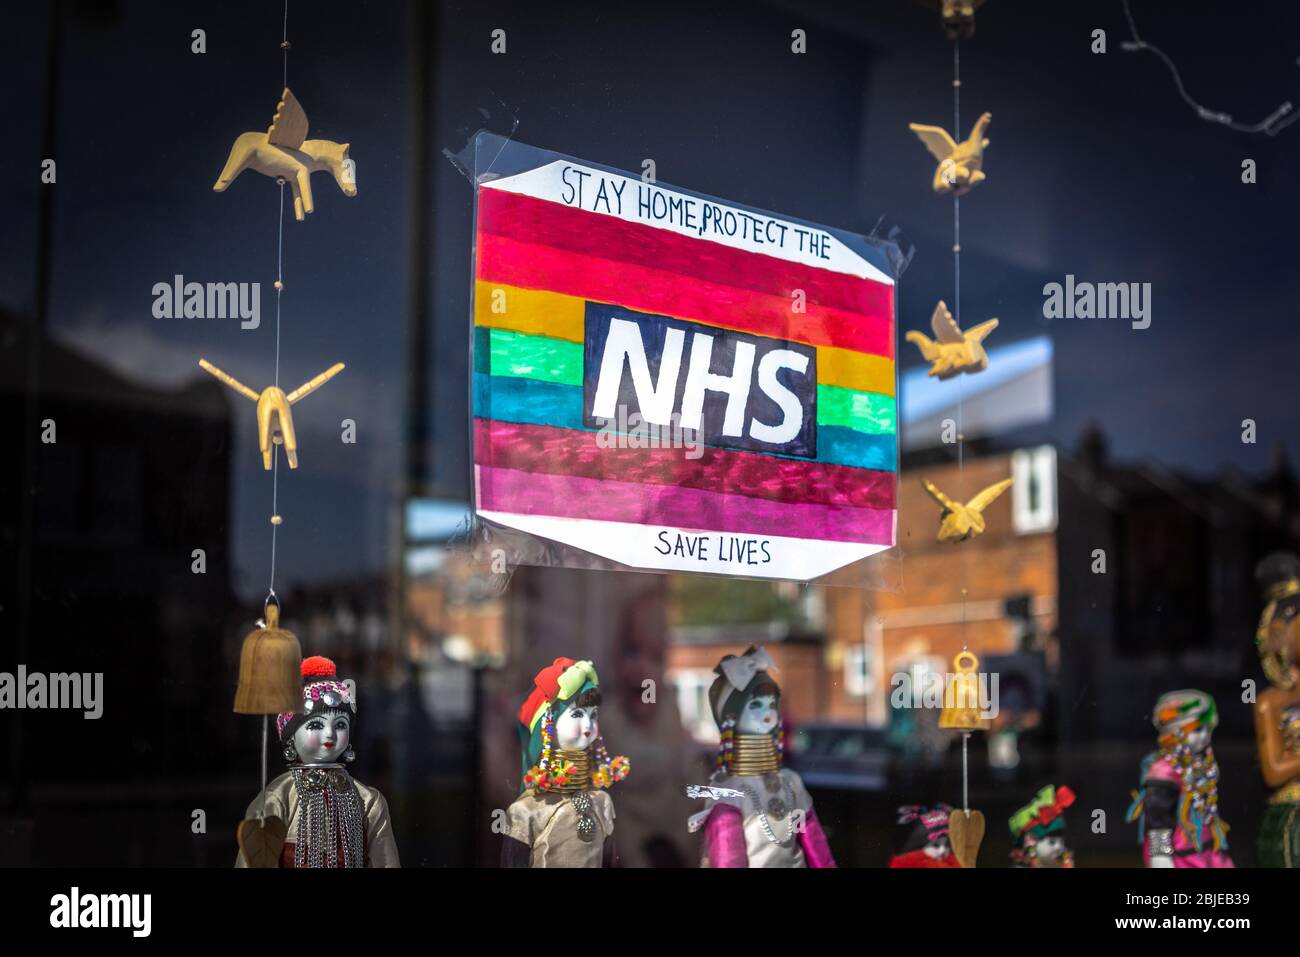 Un coronavirus arc-en-ciel 'Stay Home et de protéger notre NHS -Save Livess' message signe dans la fenêtre d'un restaurant fermé à Southampton 2020, Angleterre, Royaume-Uni Banque D'Images